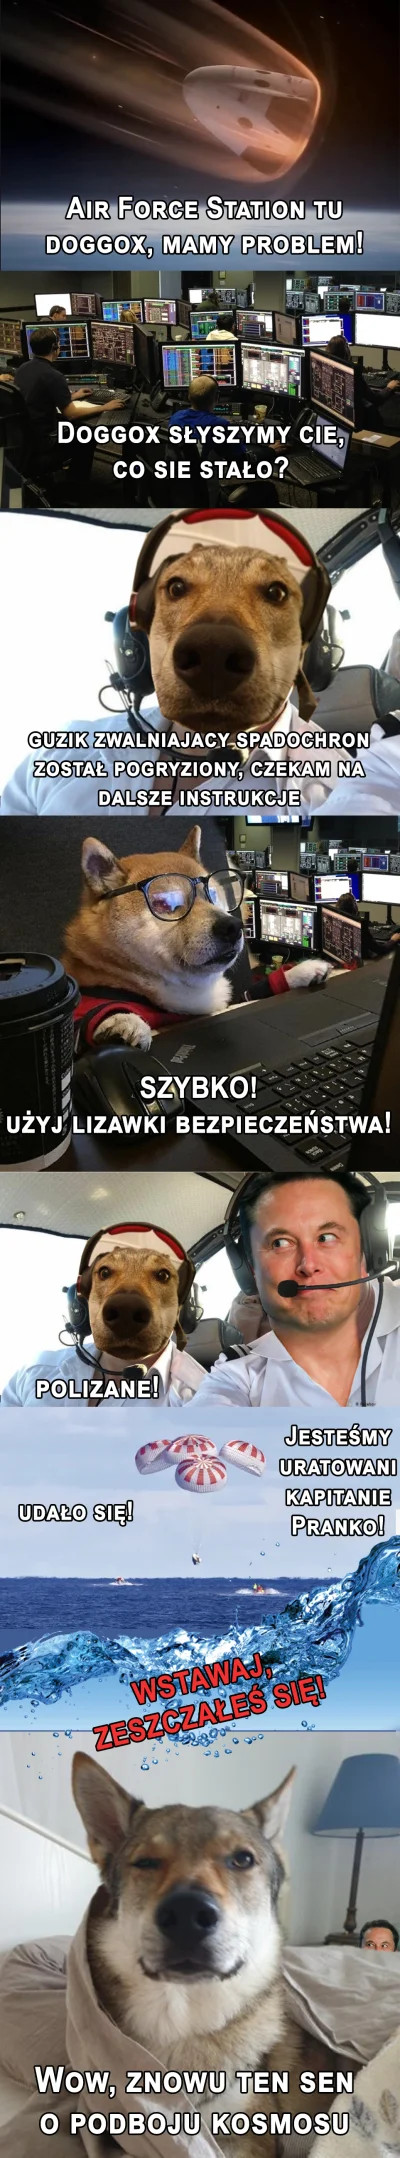 pranko_csv - Popełniłem mały #komiks xD
#prankothewolfdog #tworczoscwlasna #heheszki...